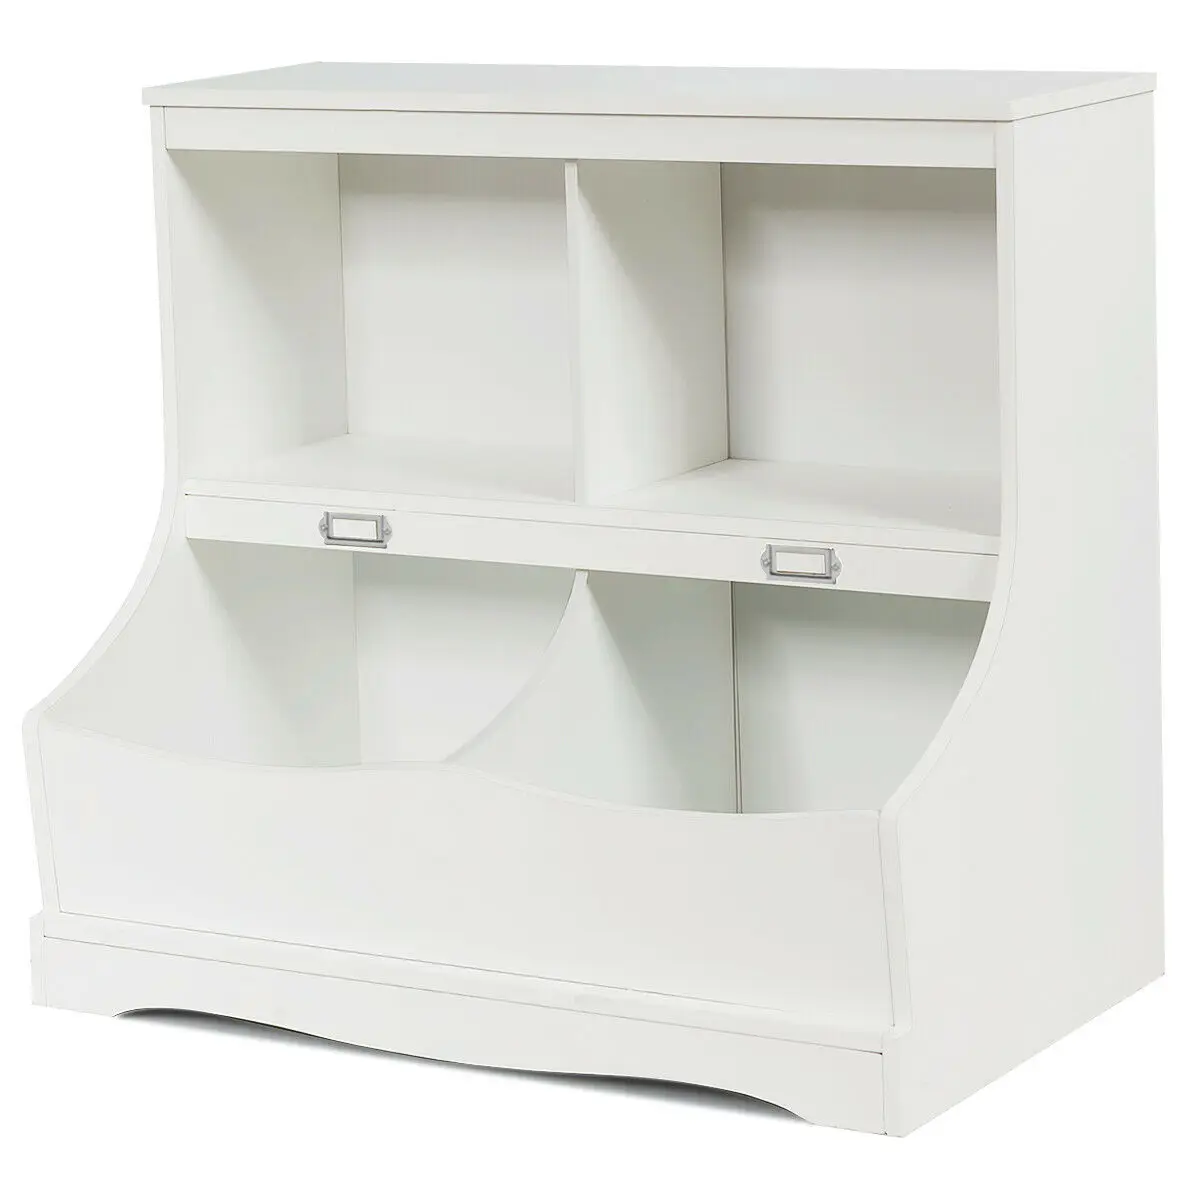 Children's Multi-Functional Bookcase Toy Storage Bin Kids Floor Cabinet White/Gray  HW63982